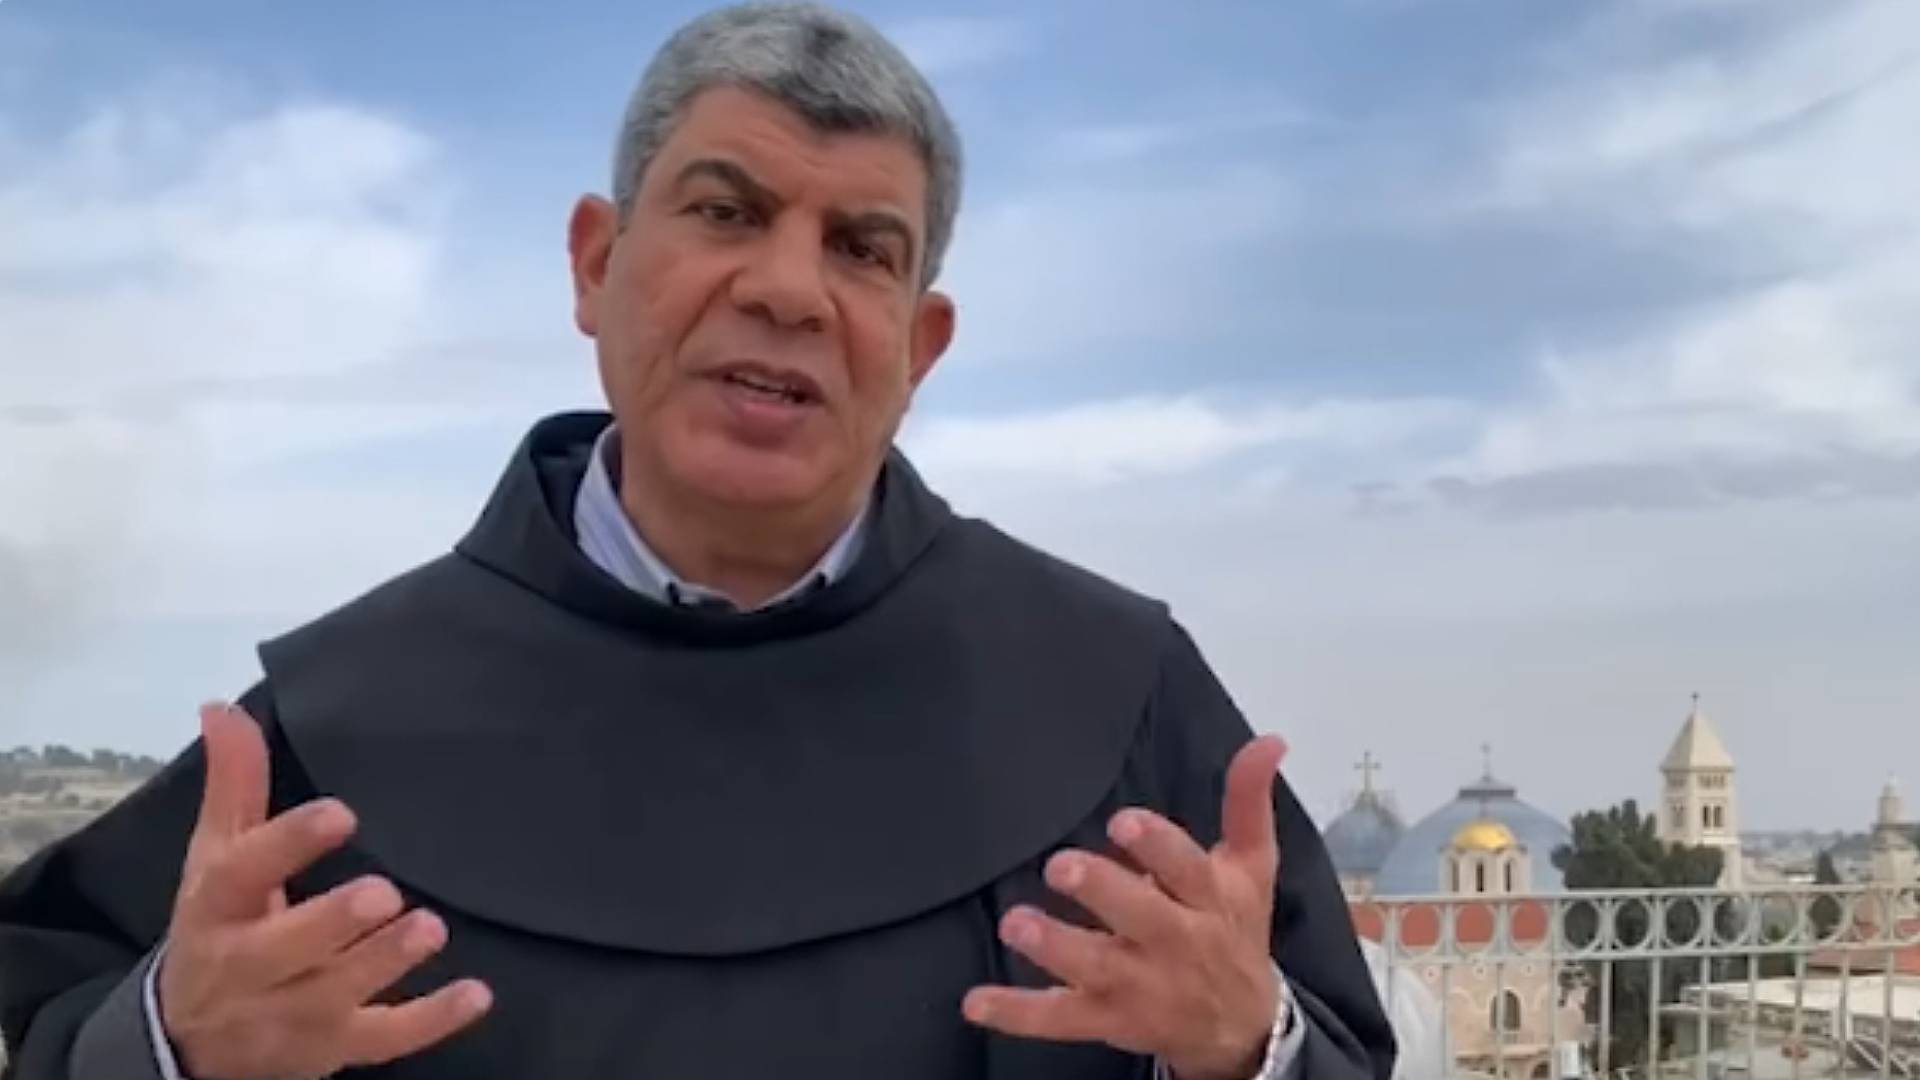 Papa foi o único a dizer 'cesse o fogo', diz padre Ibrahim Faltas